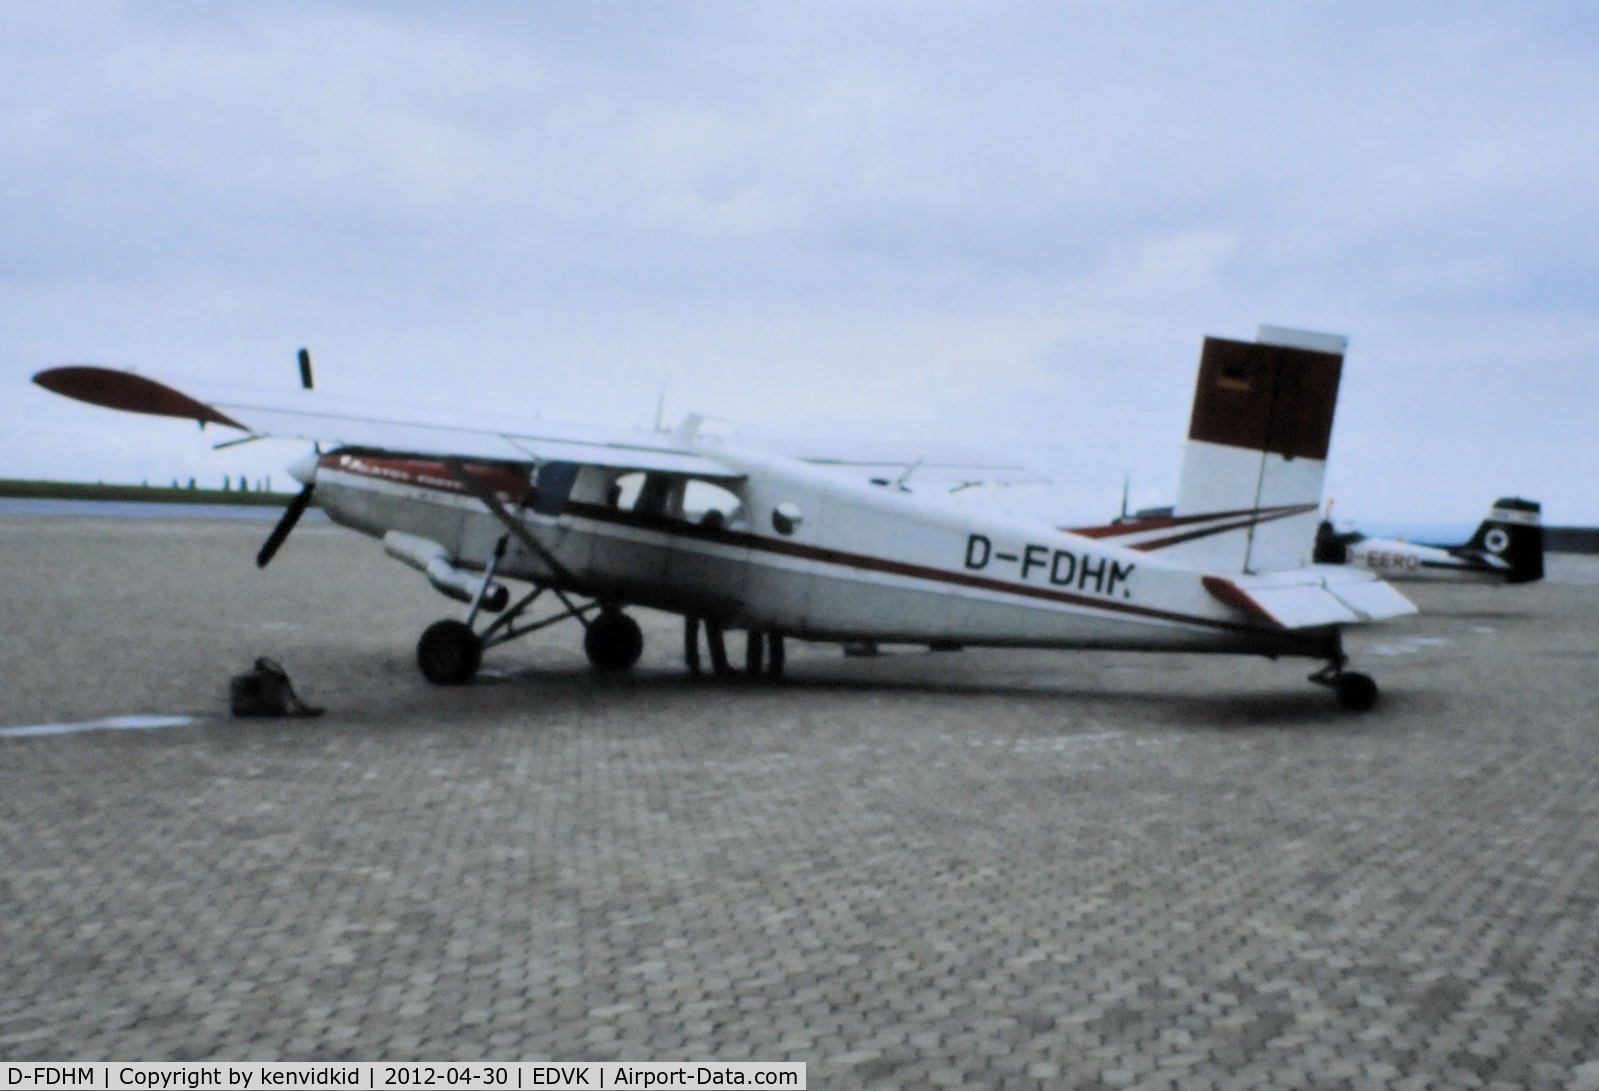 D-FDHM, 1969 Pilatus PC-6/C1-H2 Turbo Porter C/N 688, At Kassel Calden early 1980's.
Scanned from slide.